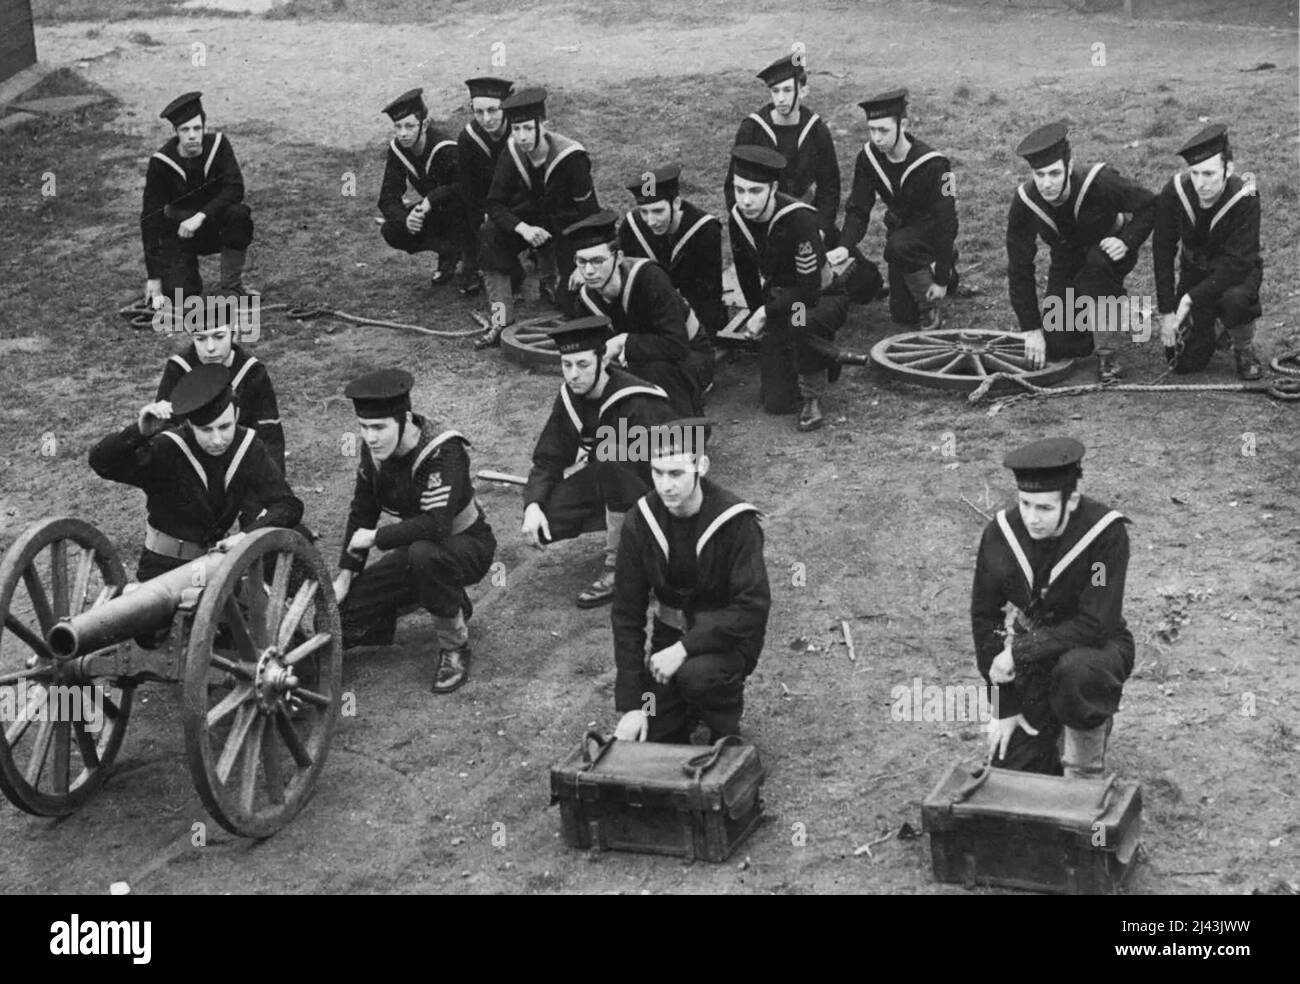 The Young Gunners - aufgenommen in ihrem Depot in Wimbledon, die Sea Cadets, die sich einer Waffenübung unterziehen. Diese jungen Sea Cadets nehmen ihre Ausbildung sicherlich ernst und geben eine kluge Leistung in der Waffenübung. 26. März 1943. (Foto von Fox Photos). Stockfoto